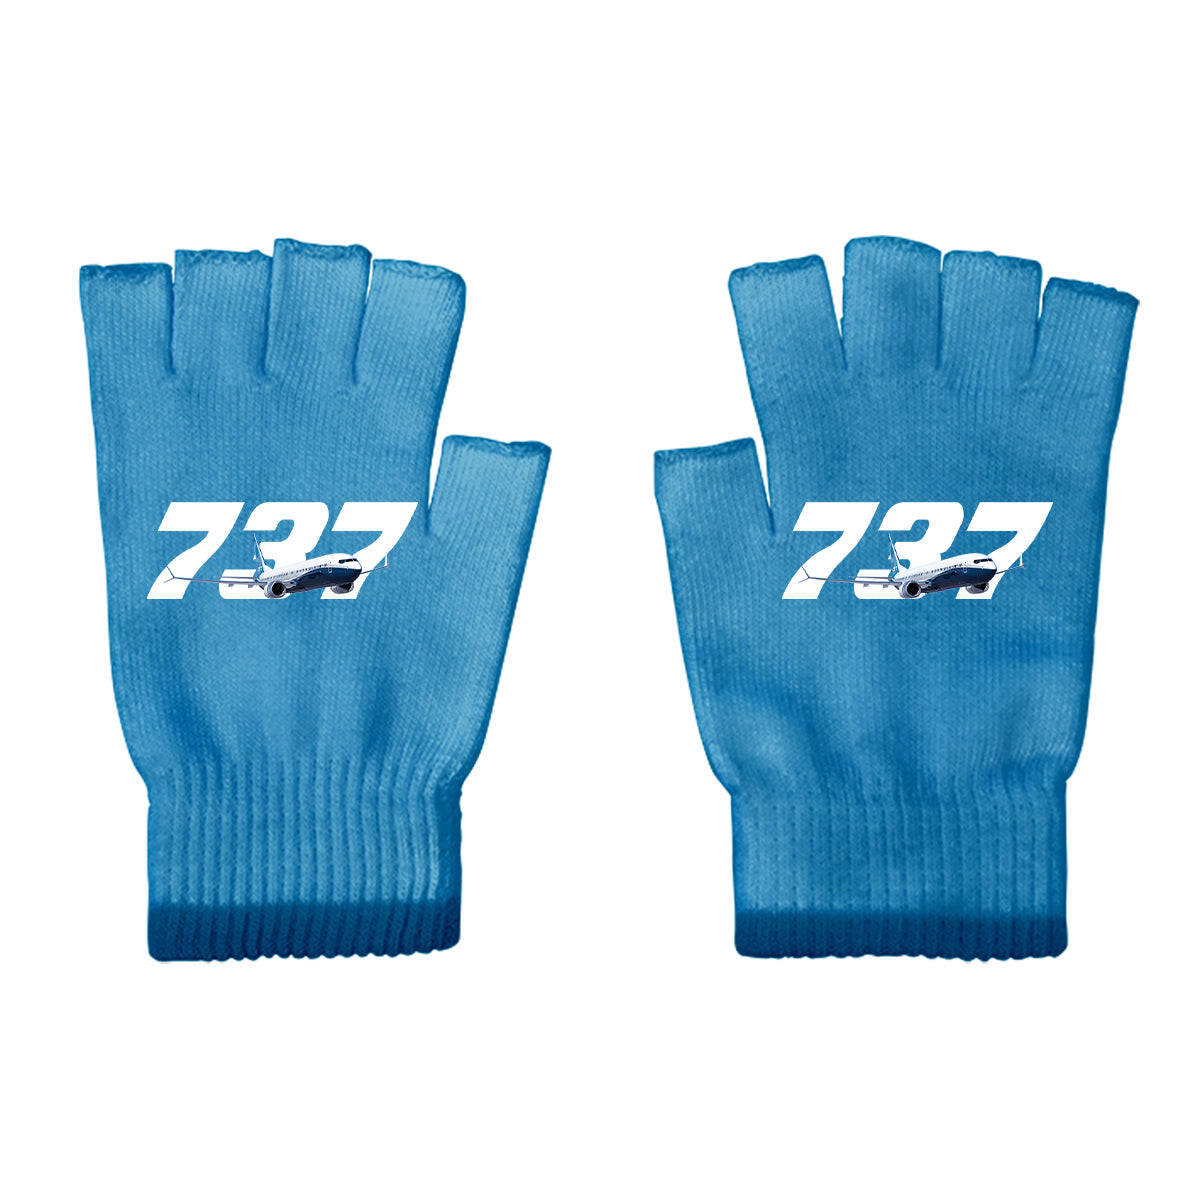 Super Boeing 737 Designed Cut Gloves